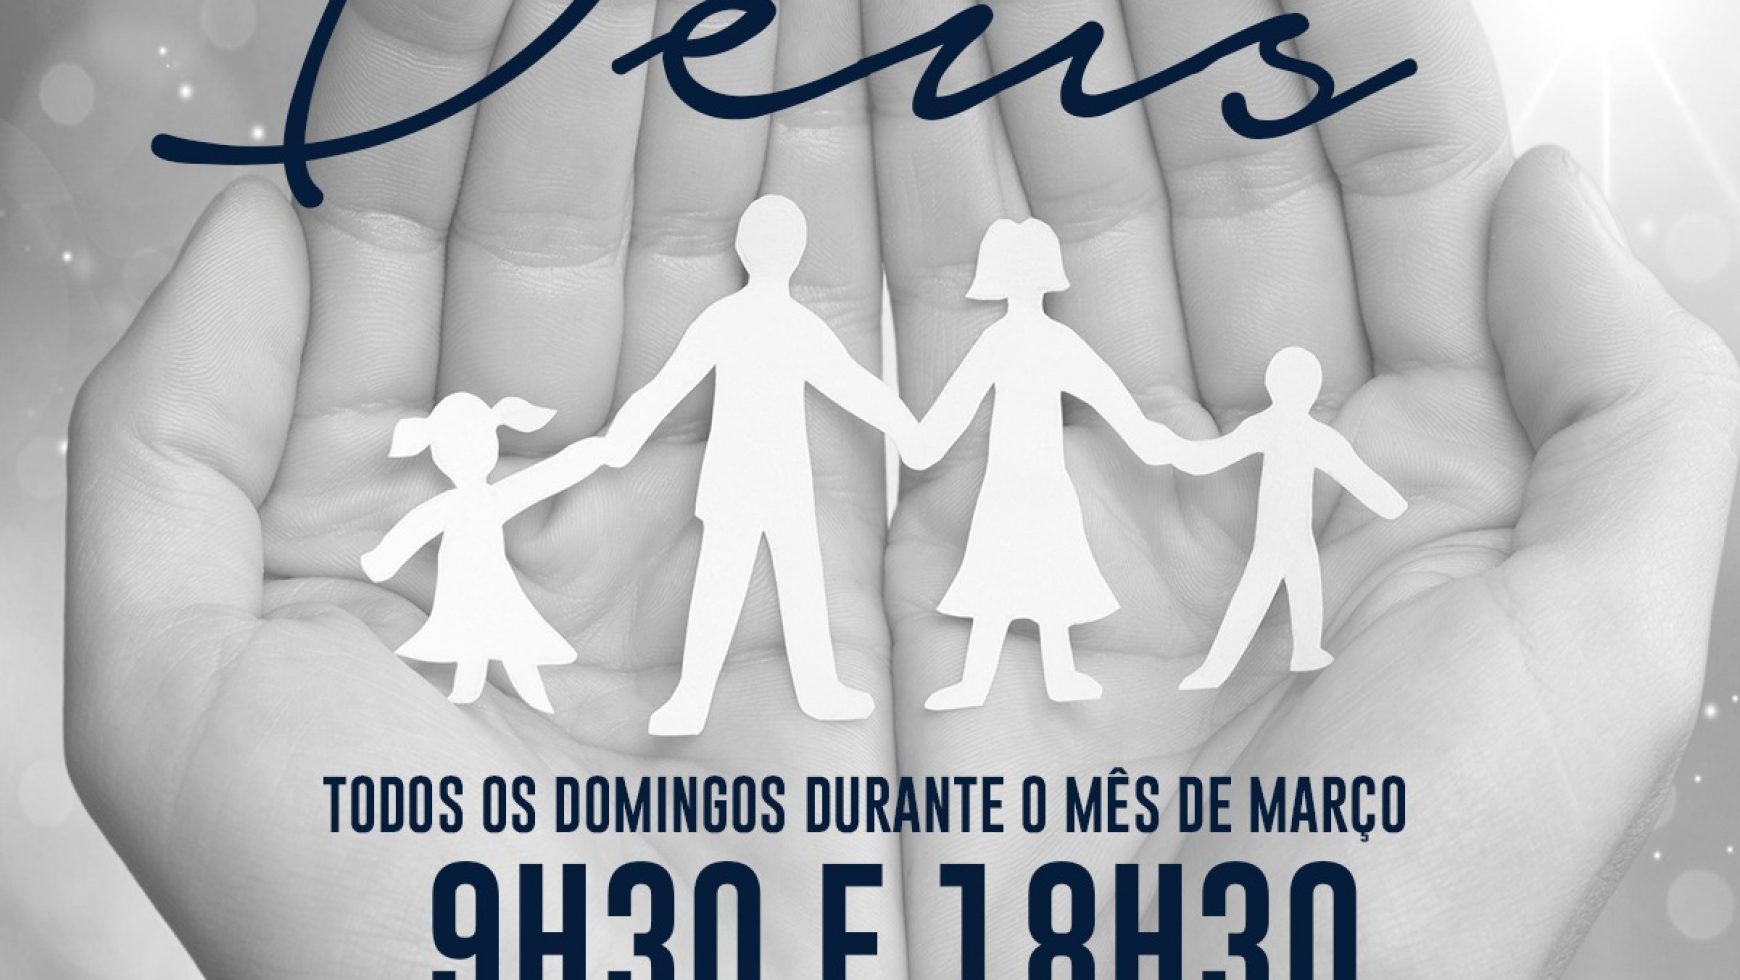 ADSA inicia neste domingo nova campanha para o mês de março: Minha Família nas Mãos de Deus